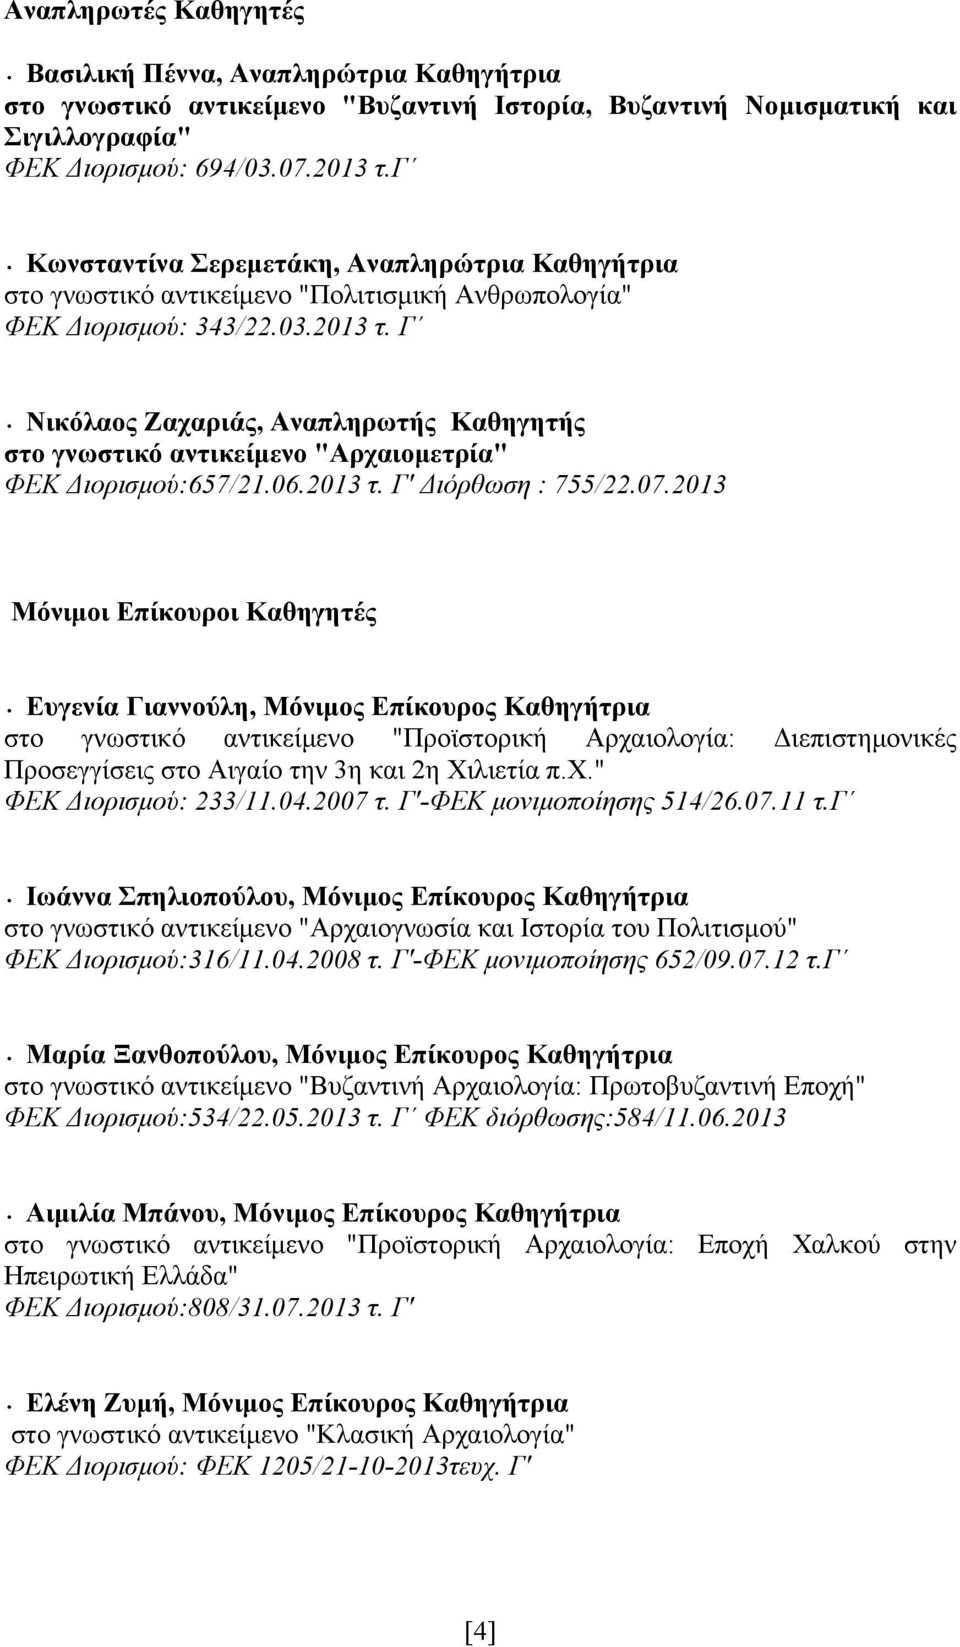 Γ Νικόλαος Ζαχαριάς, Αναπληρωτής Καθηγητής στο γνωστικό αντικείμενο "Αρχαιομετρία" ΦΕΚ Διορισμού:657/21.06.2013 τ. Γ' Διόρθωση : 755/22.07.